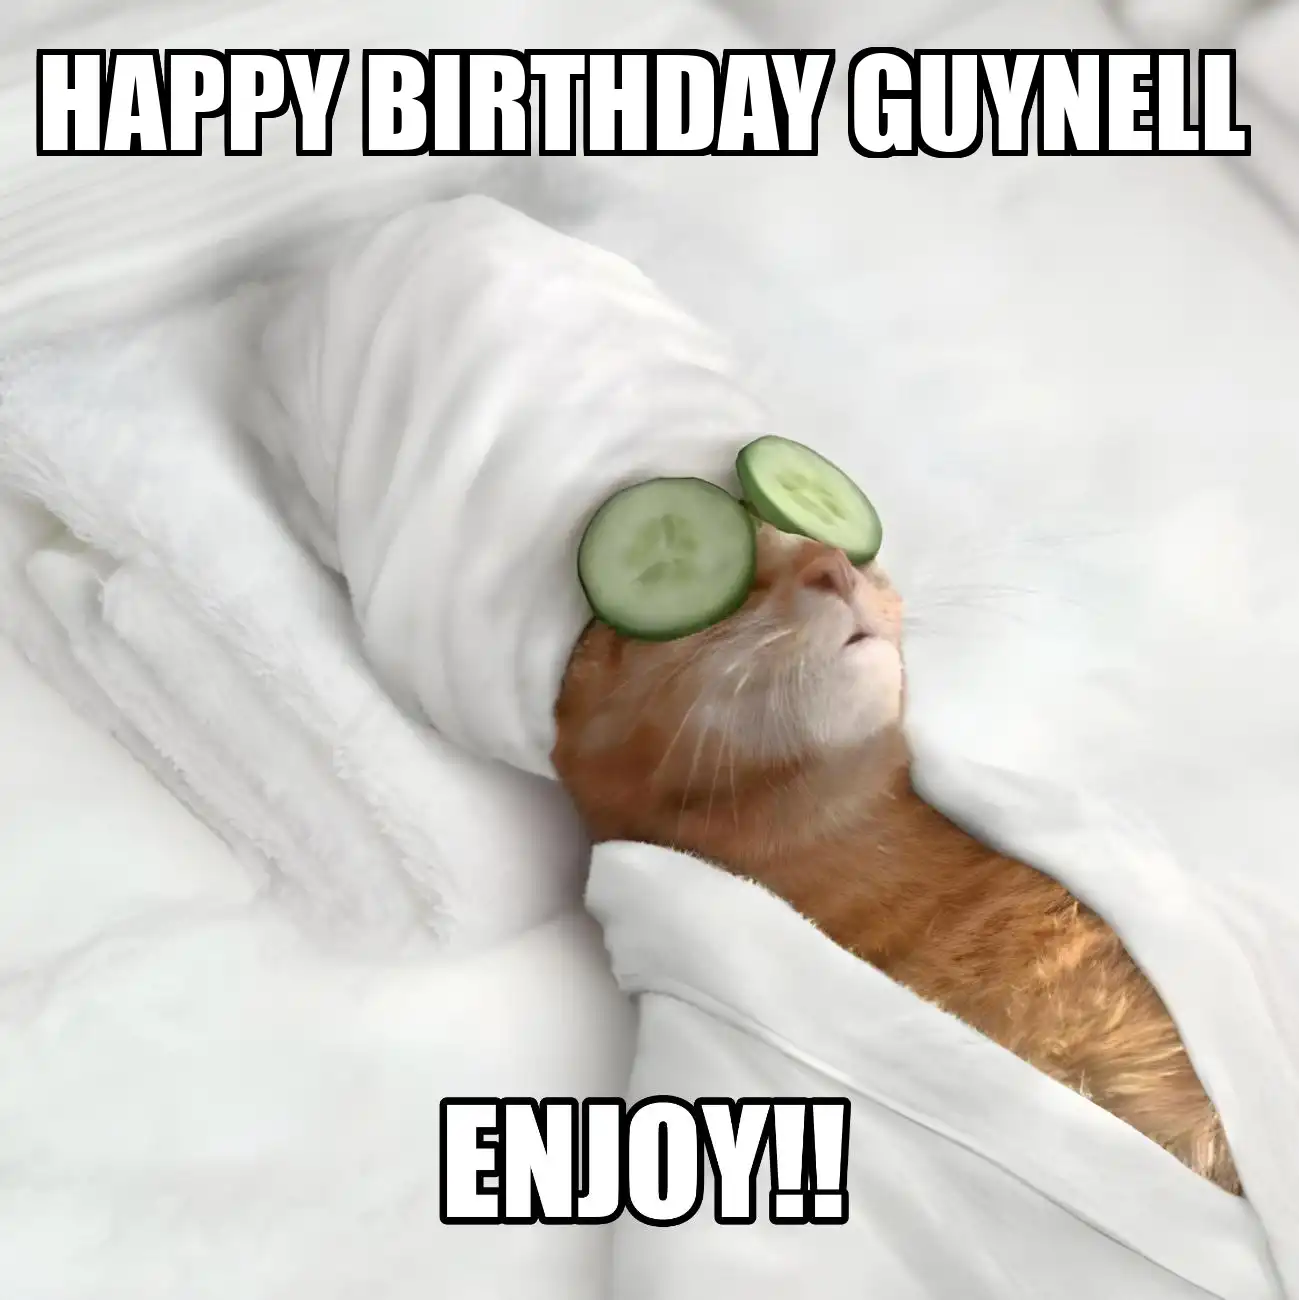 Happy Birthday Guynell Enjoy Cat Meme